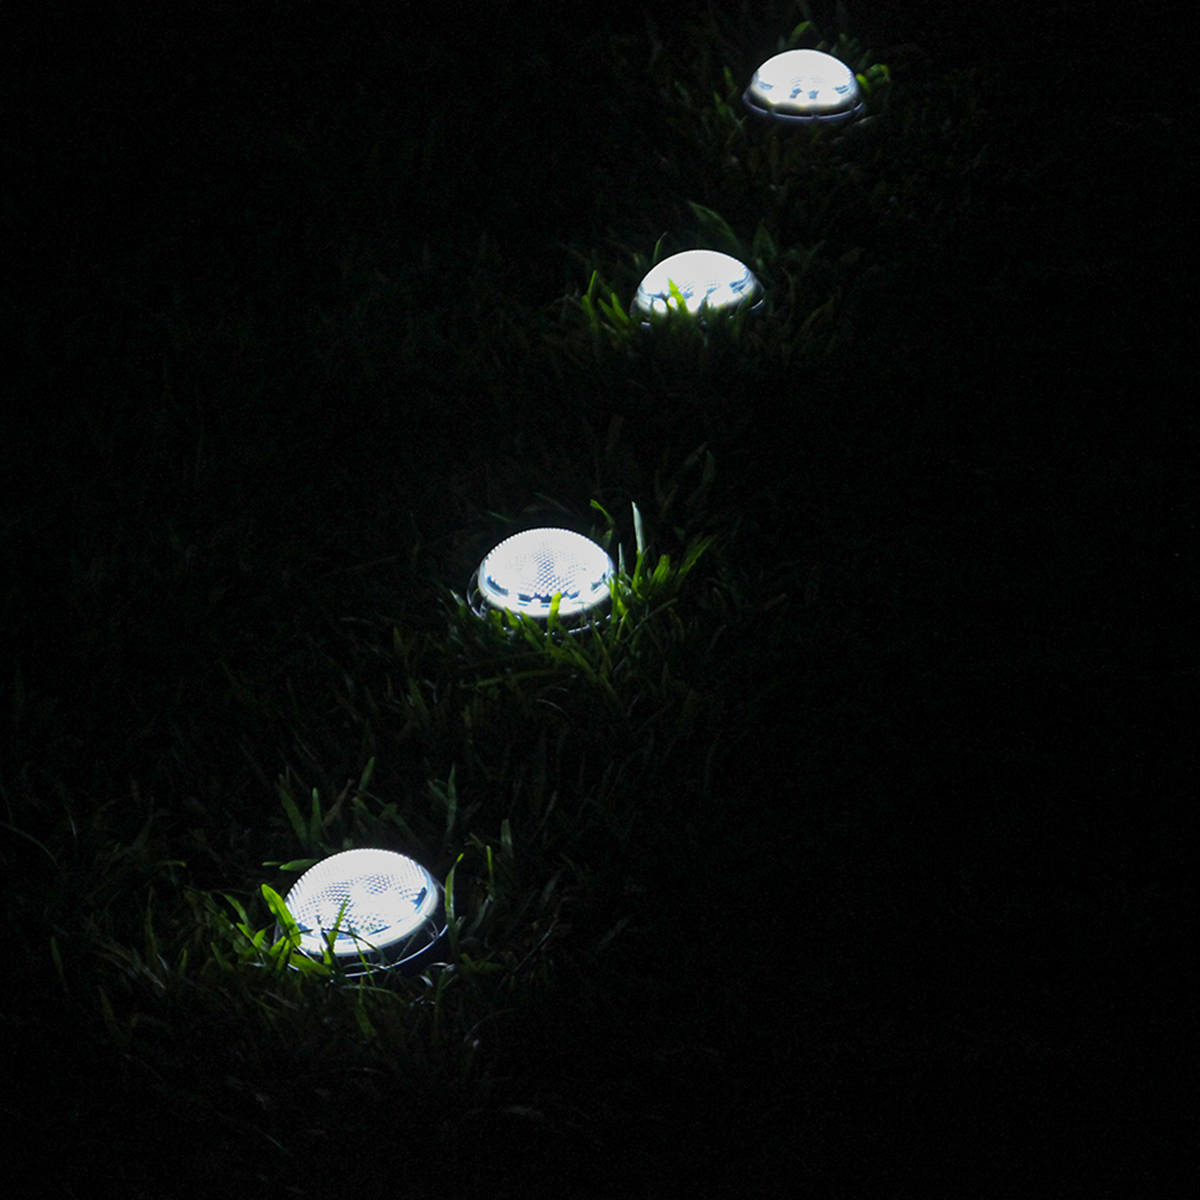 2PCS-Auto-Sensing-LED-Solar-Ball-Light-Garden-Outdoor-Patio-Lawn-Path-Lamp-For-Home-Decor-1770112-8